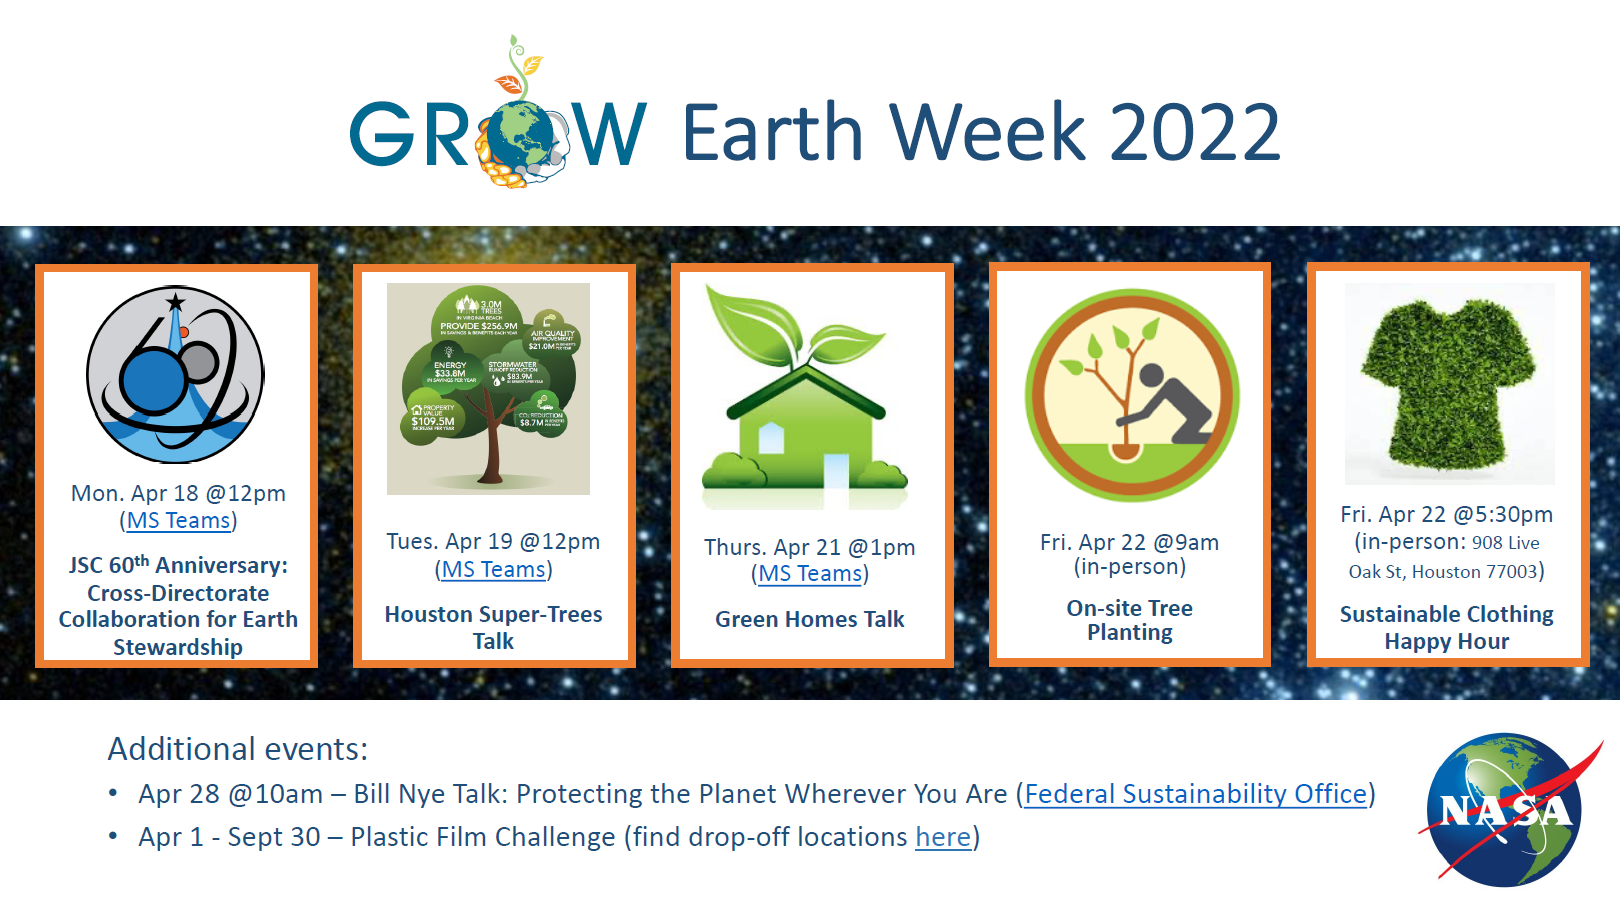 GROW Earth Week events